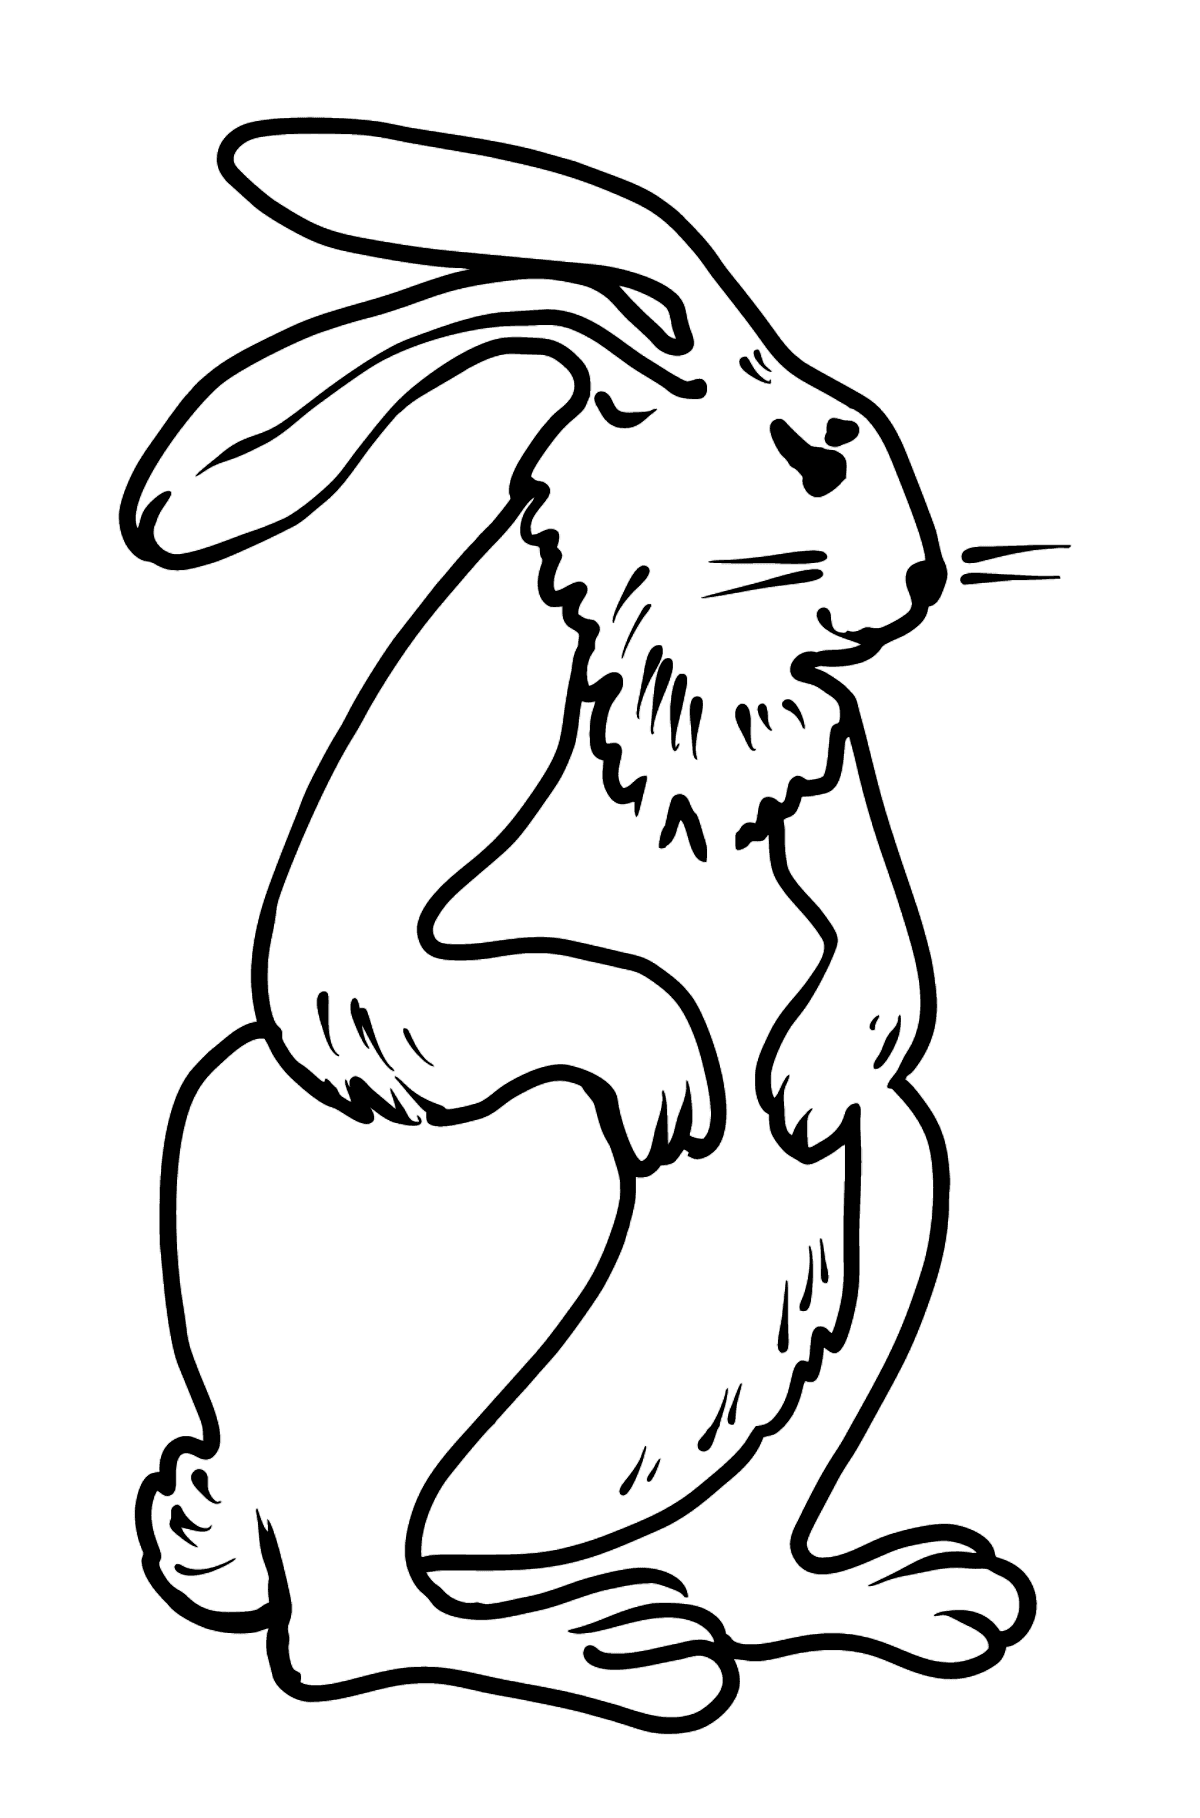 Tegning til fargelegging kanin - Tegninger til fargelegging for barn